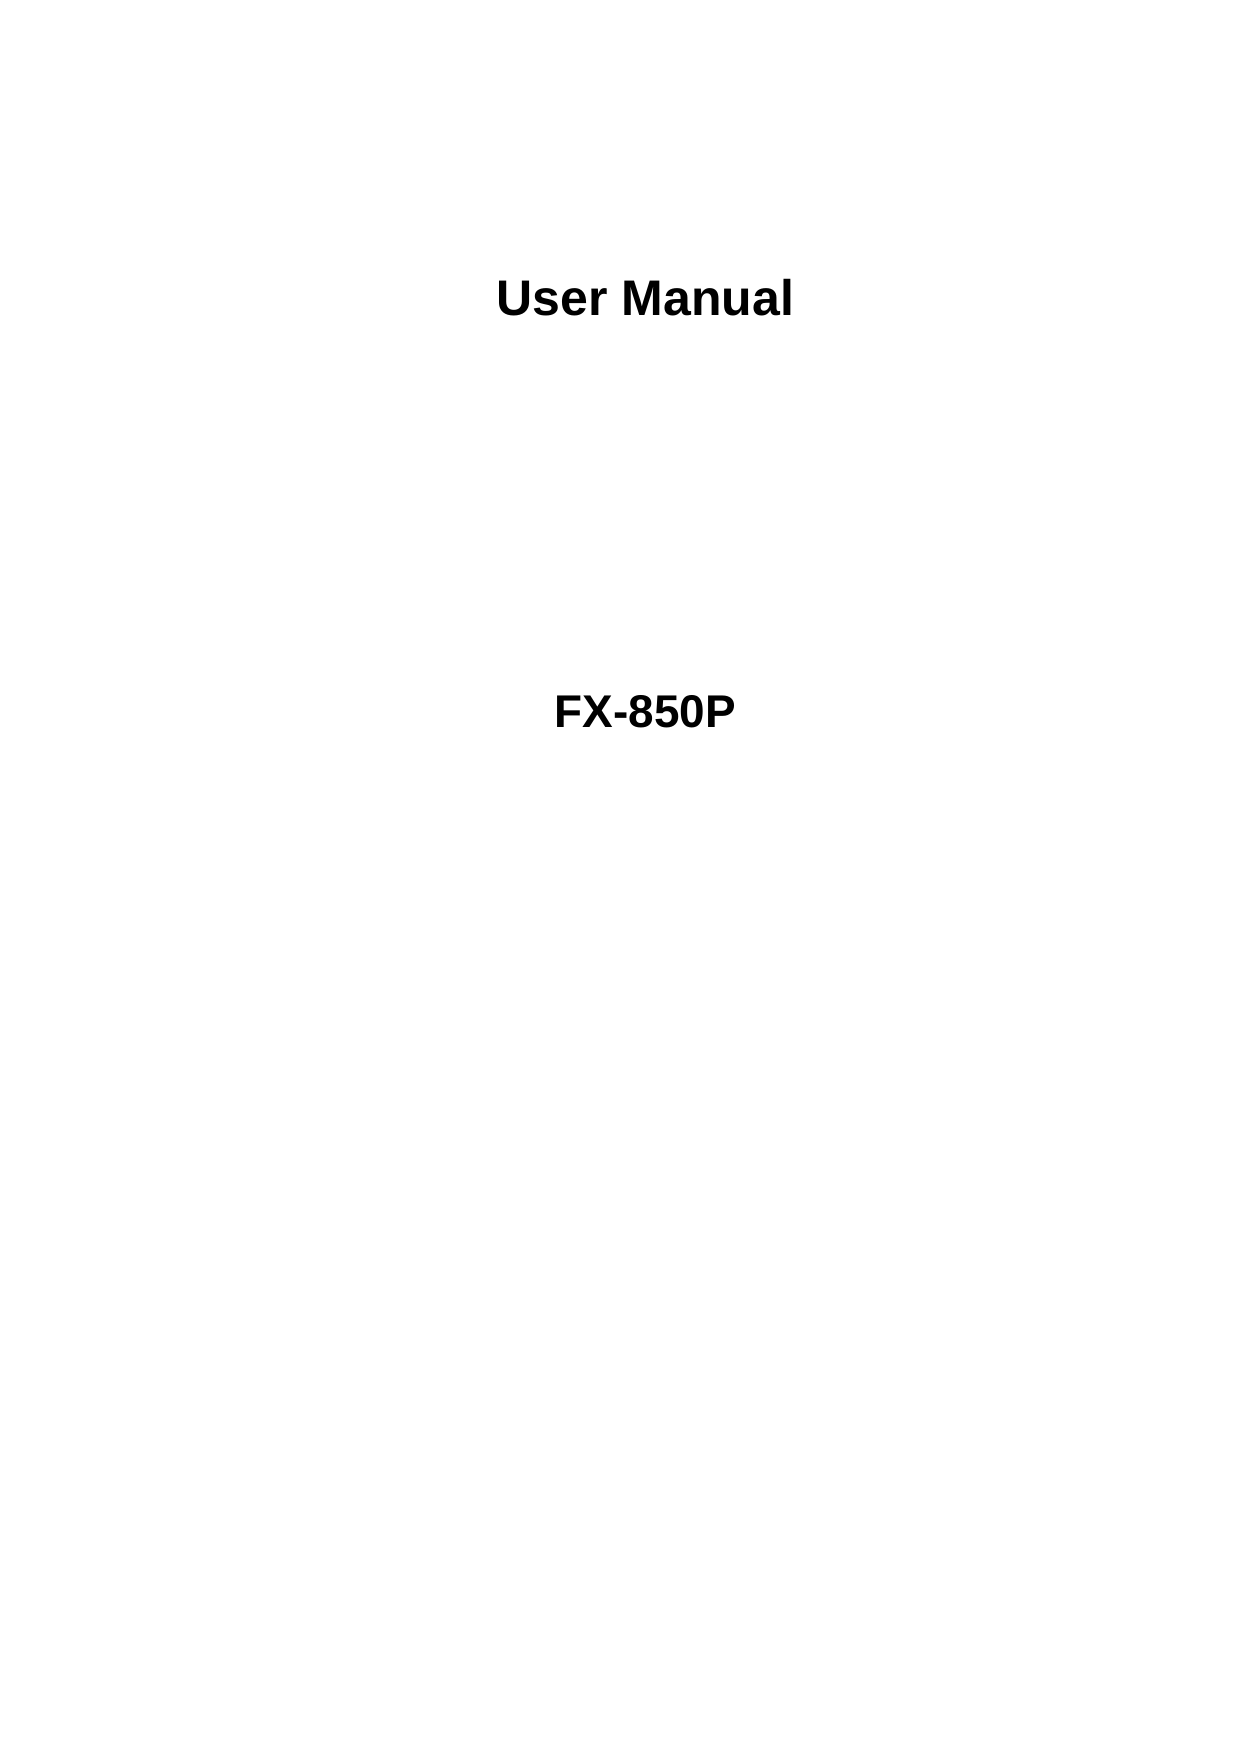      User Manual        FX-850P 